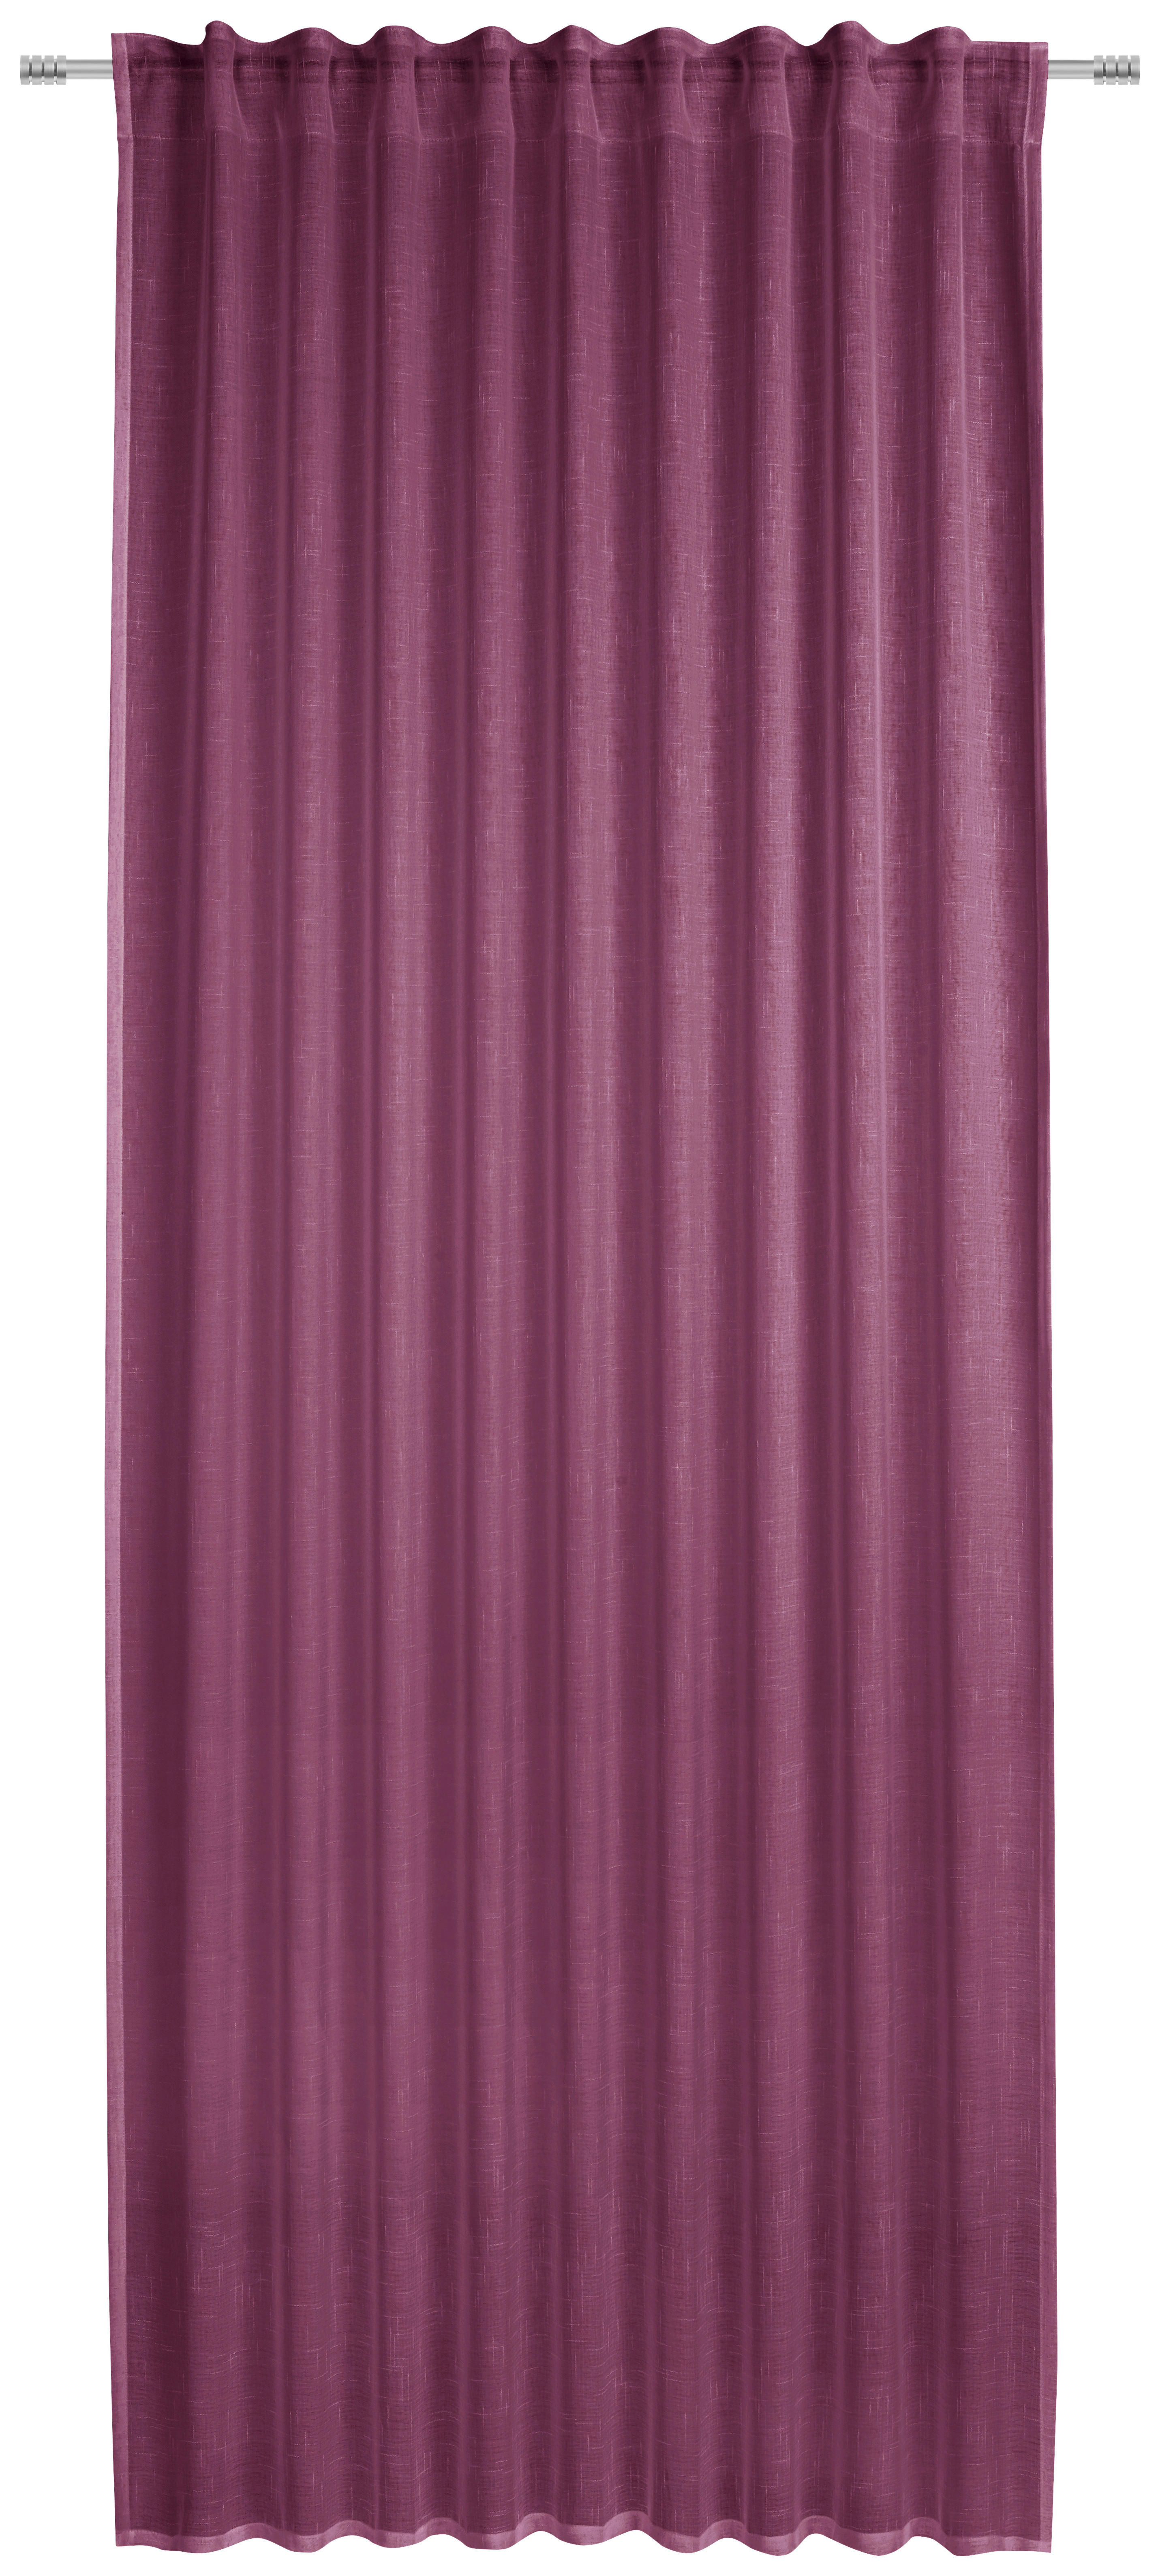 GARDINLÄNGD halvtransparent  - bär, Basics, textil (135/245cm) - Esposa